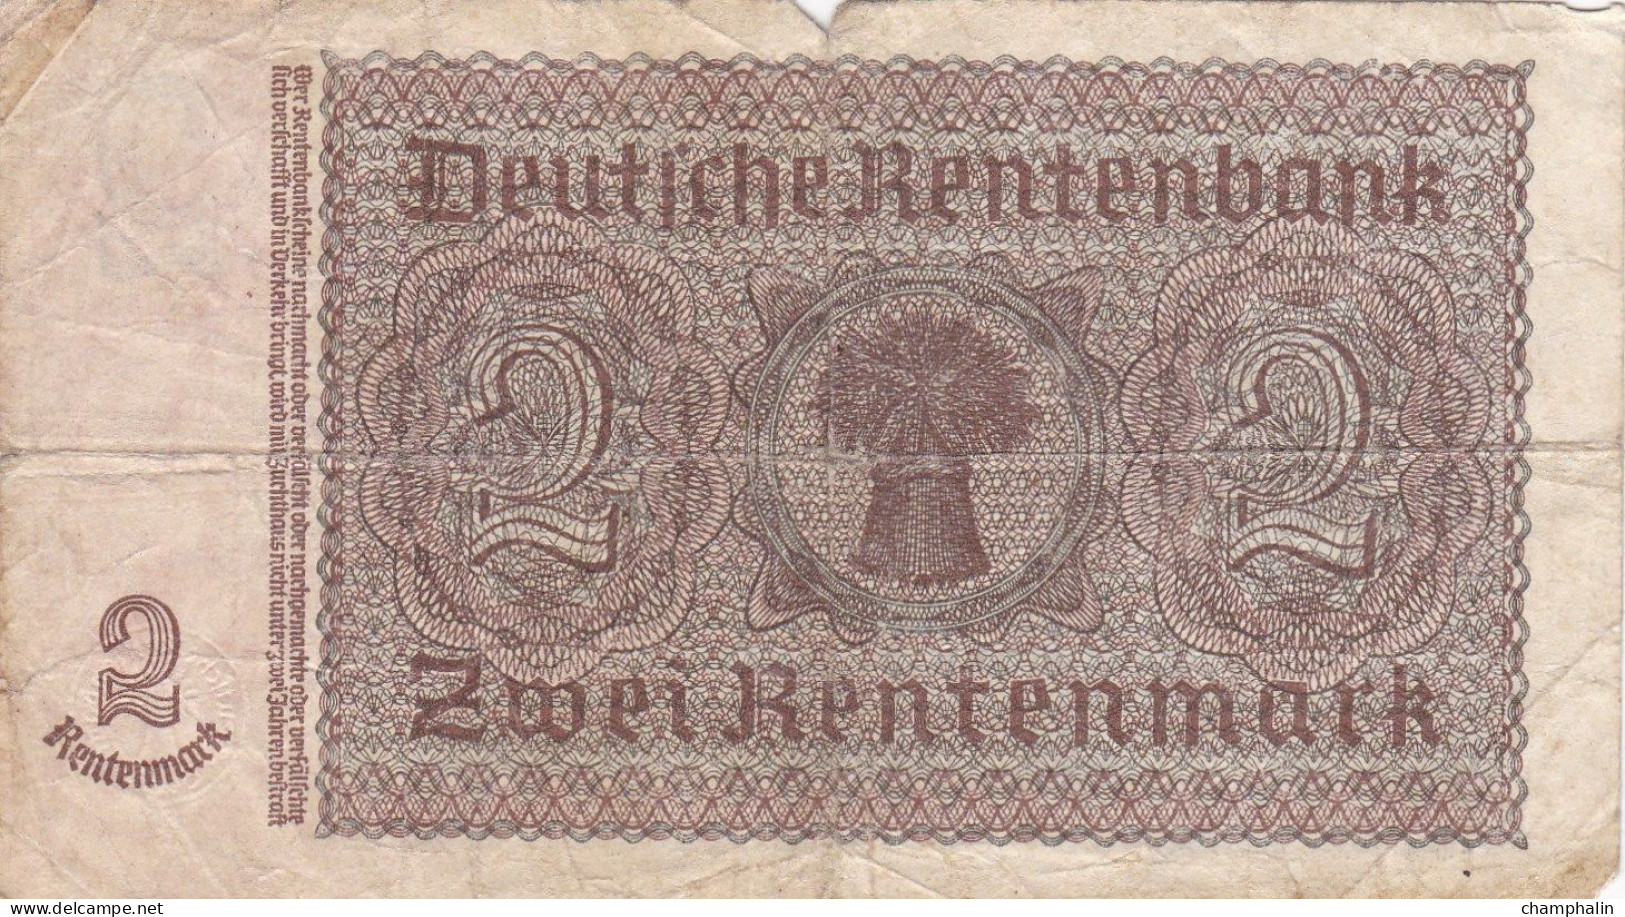 Allemagne - Billet De 2 Rentenmark - 30 Janvier 1937 - P174b - 2 Rentenmark